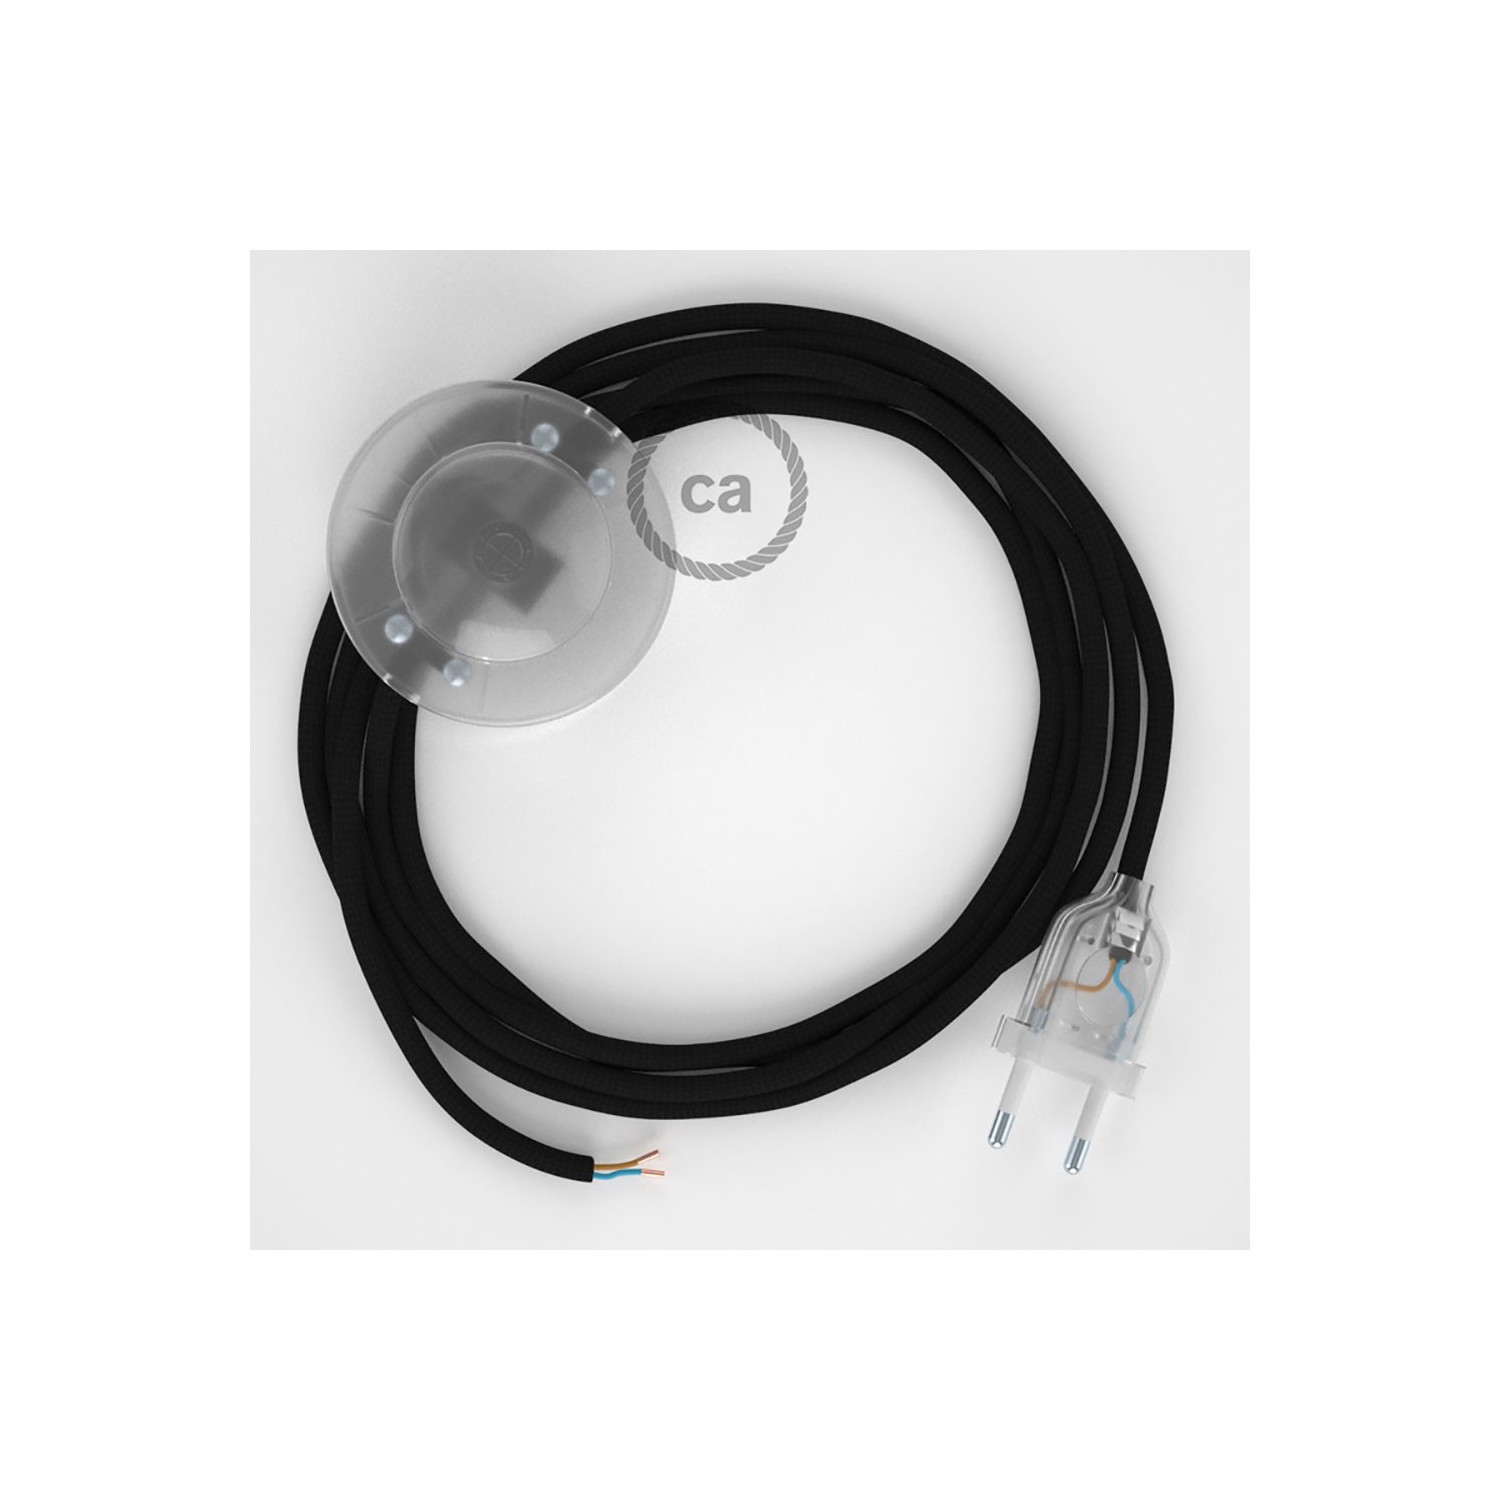 Napajecí kabel pro stojící lampu, RM04 černý hedvábný 3 m. Vyberte si barvu vypínače a zástrčky.